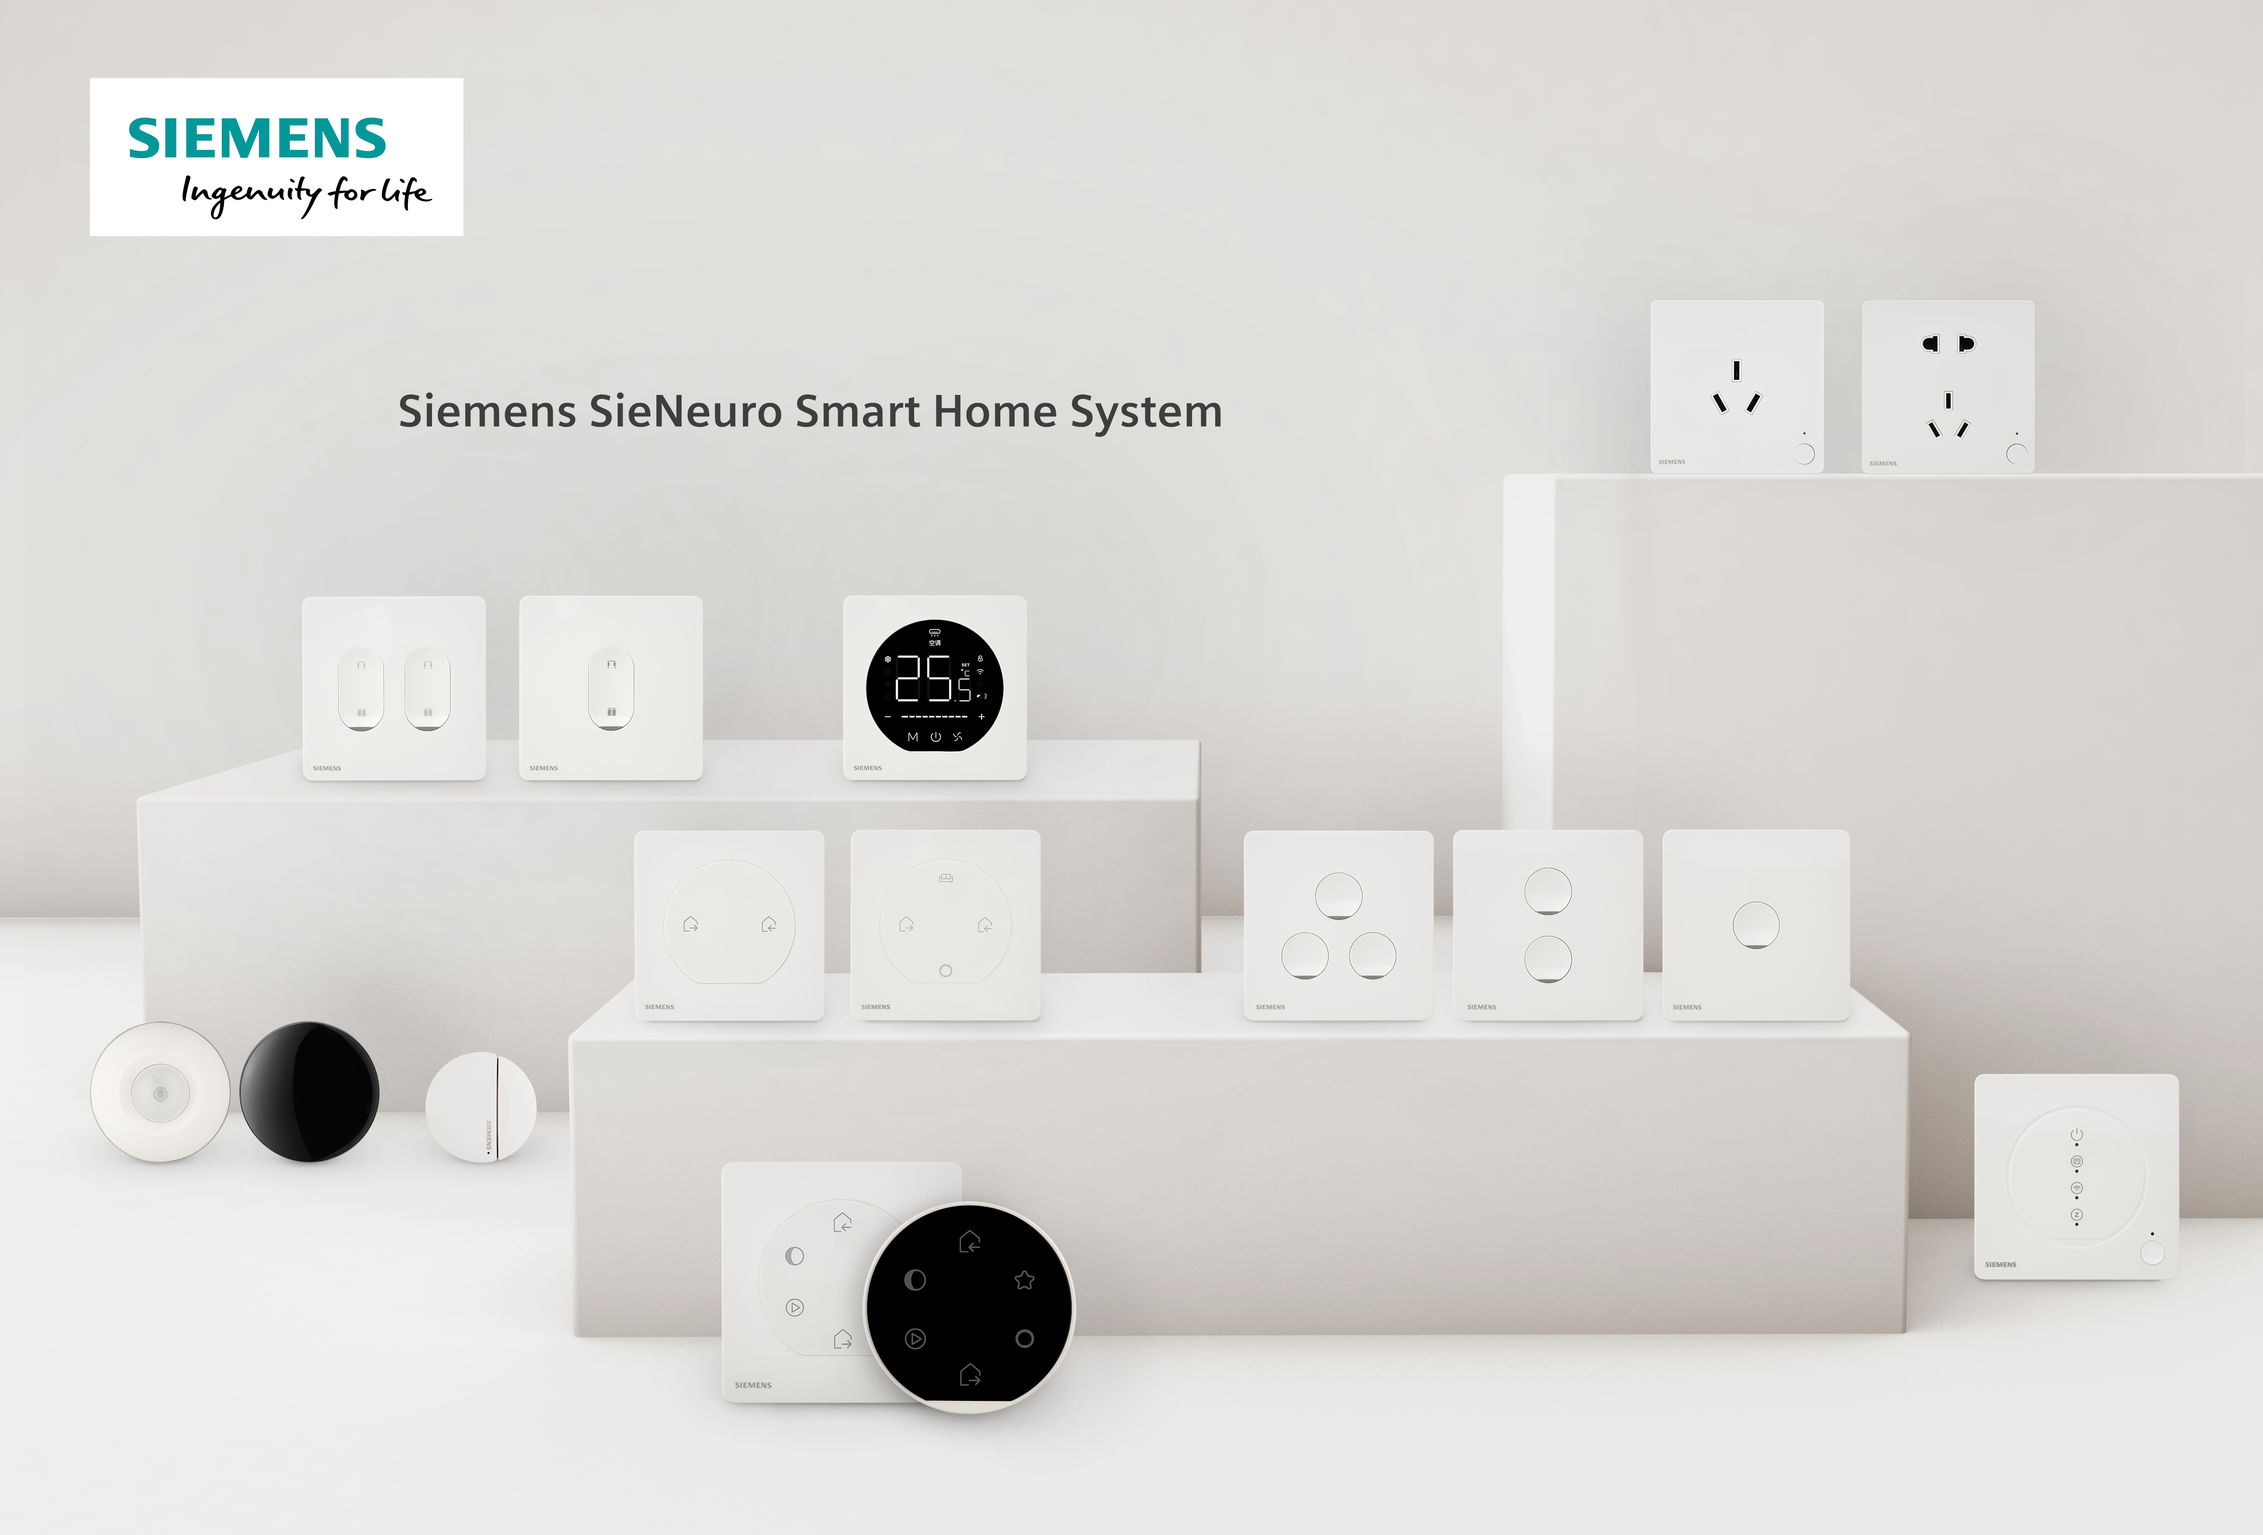 Siemens SieNeuro Smart Home System